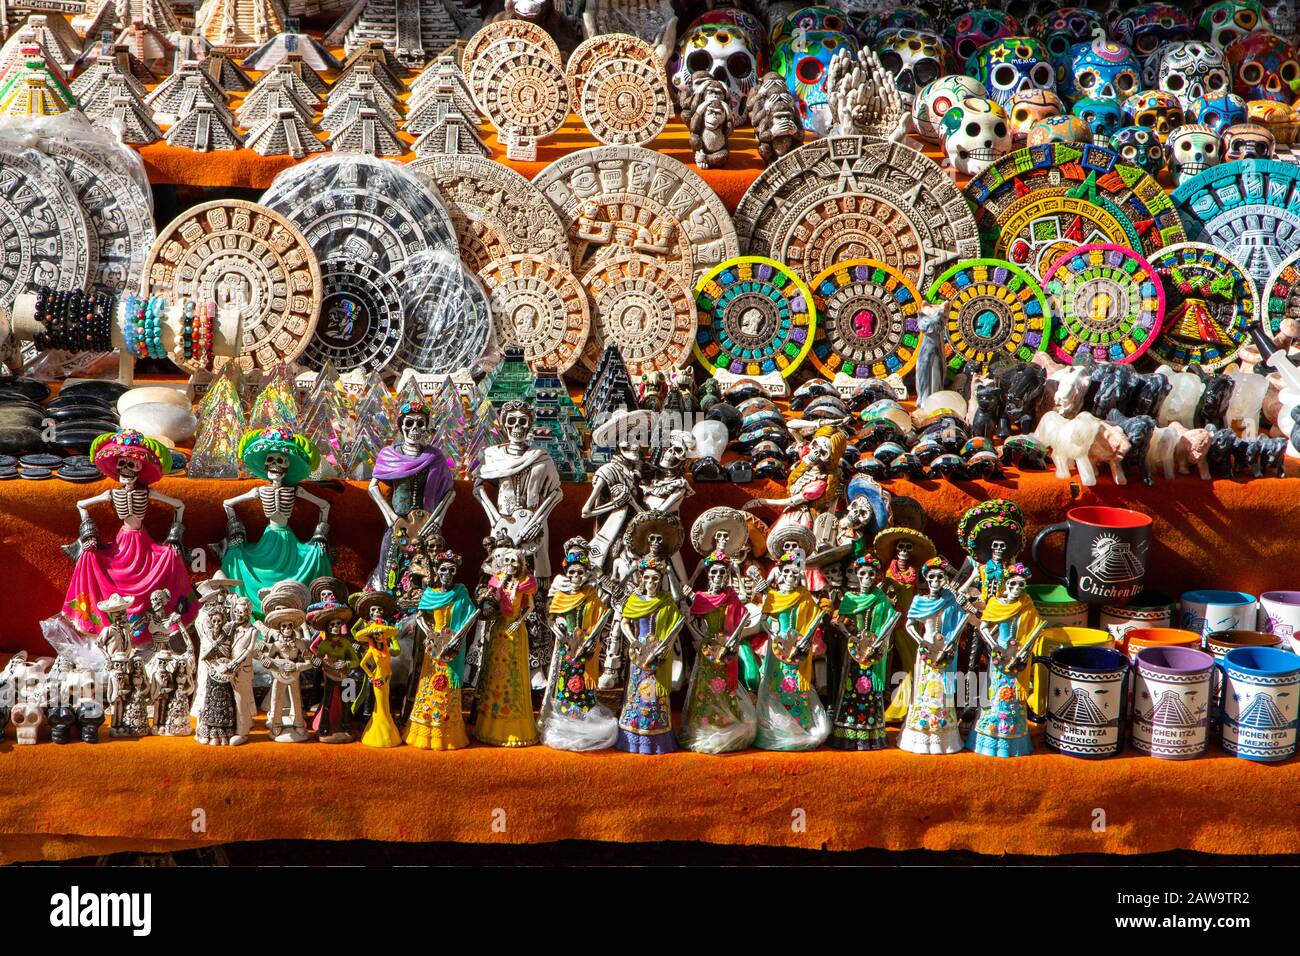 Typische geschnitzte Holz-Souvenirs auf einem lokalen mexikanischen Markt in Chichen Itza, Yucatan-Halbinsel, Mexiko. Stockfoto